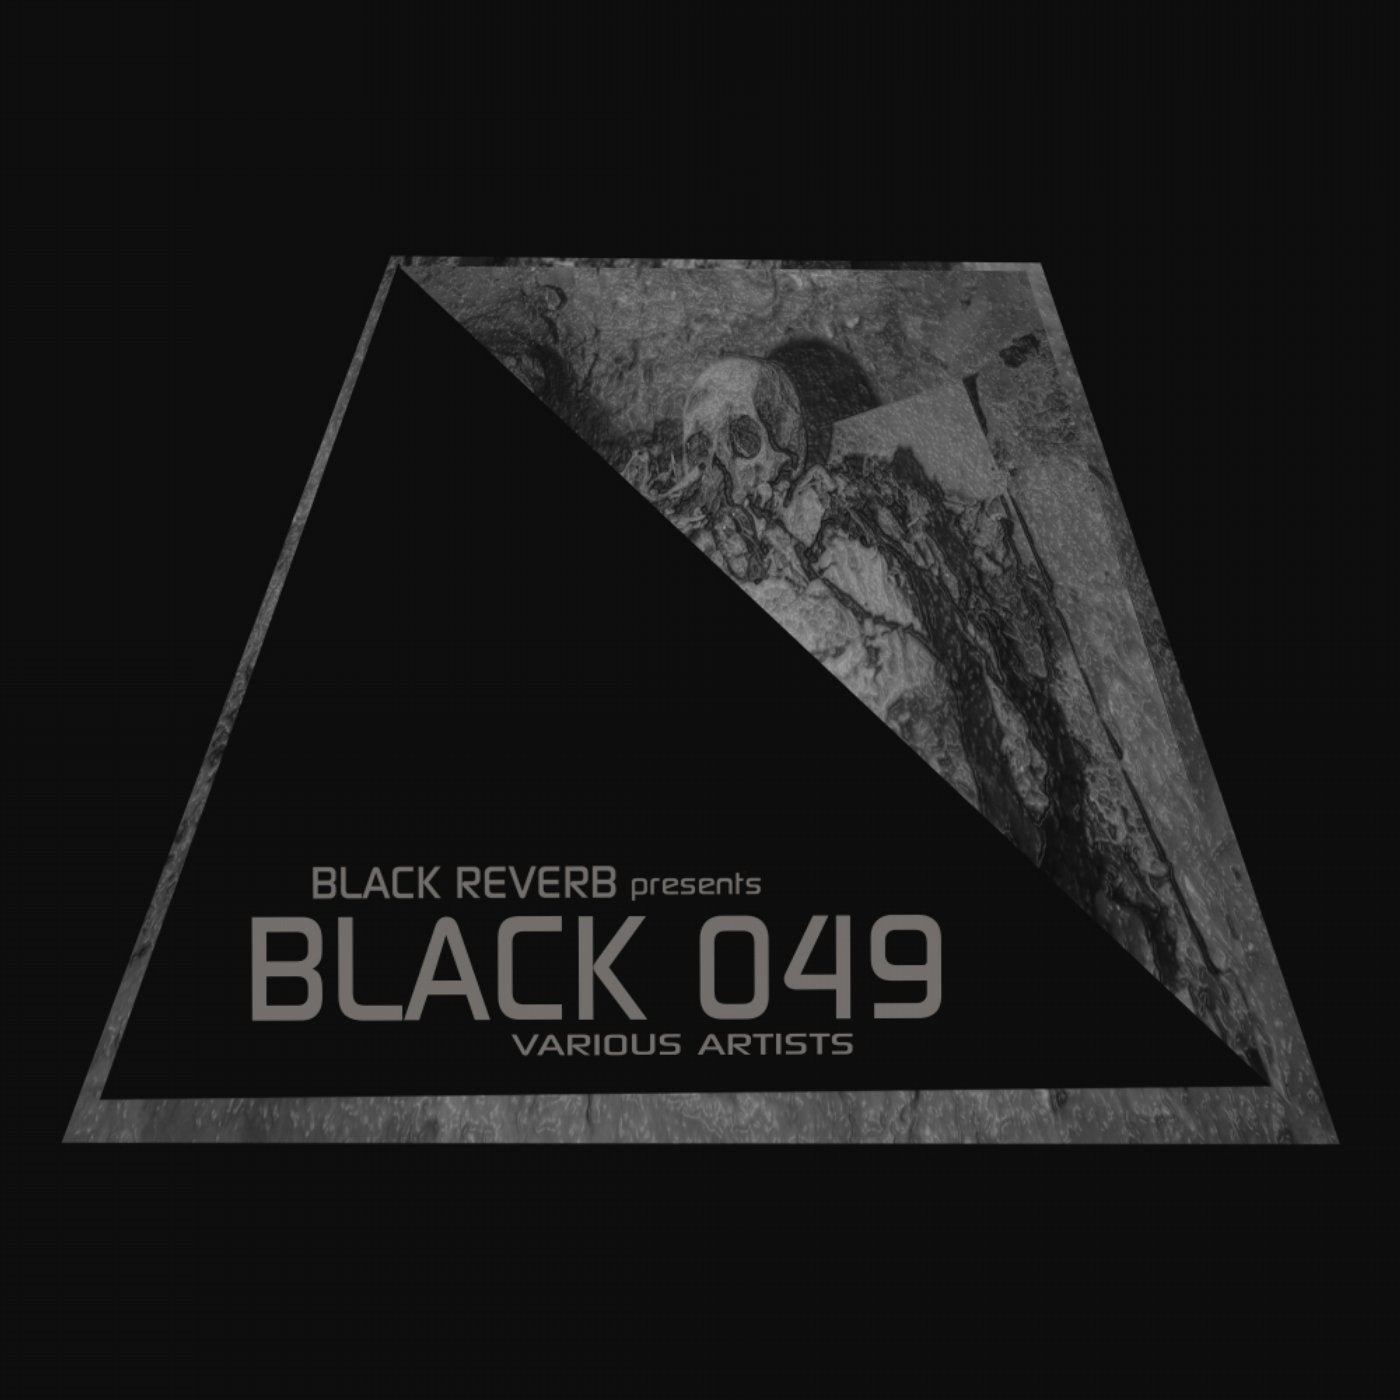 Black 049